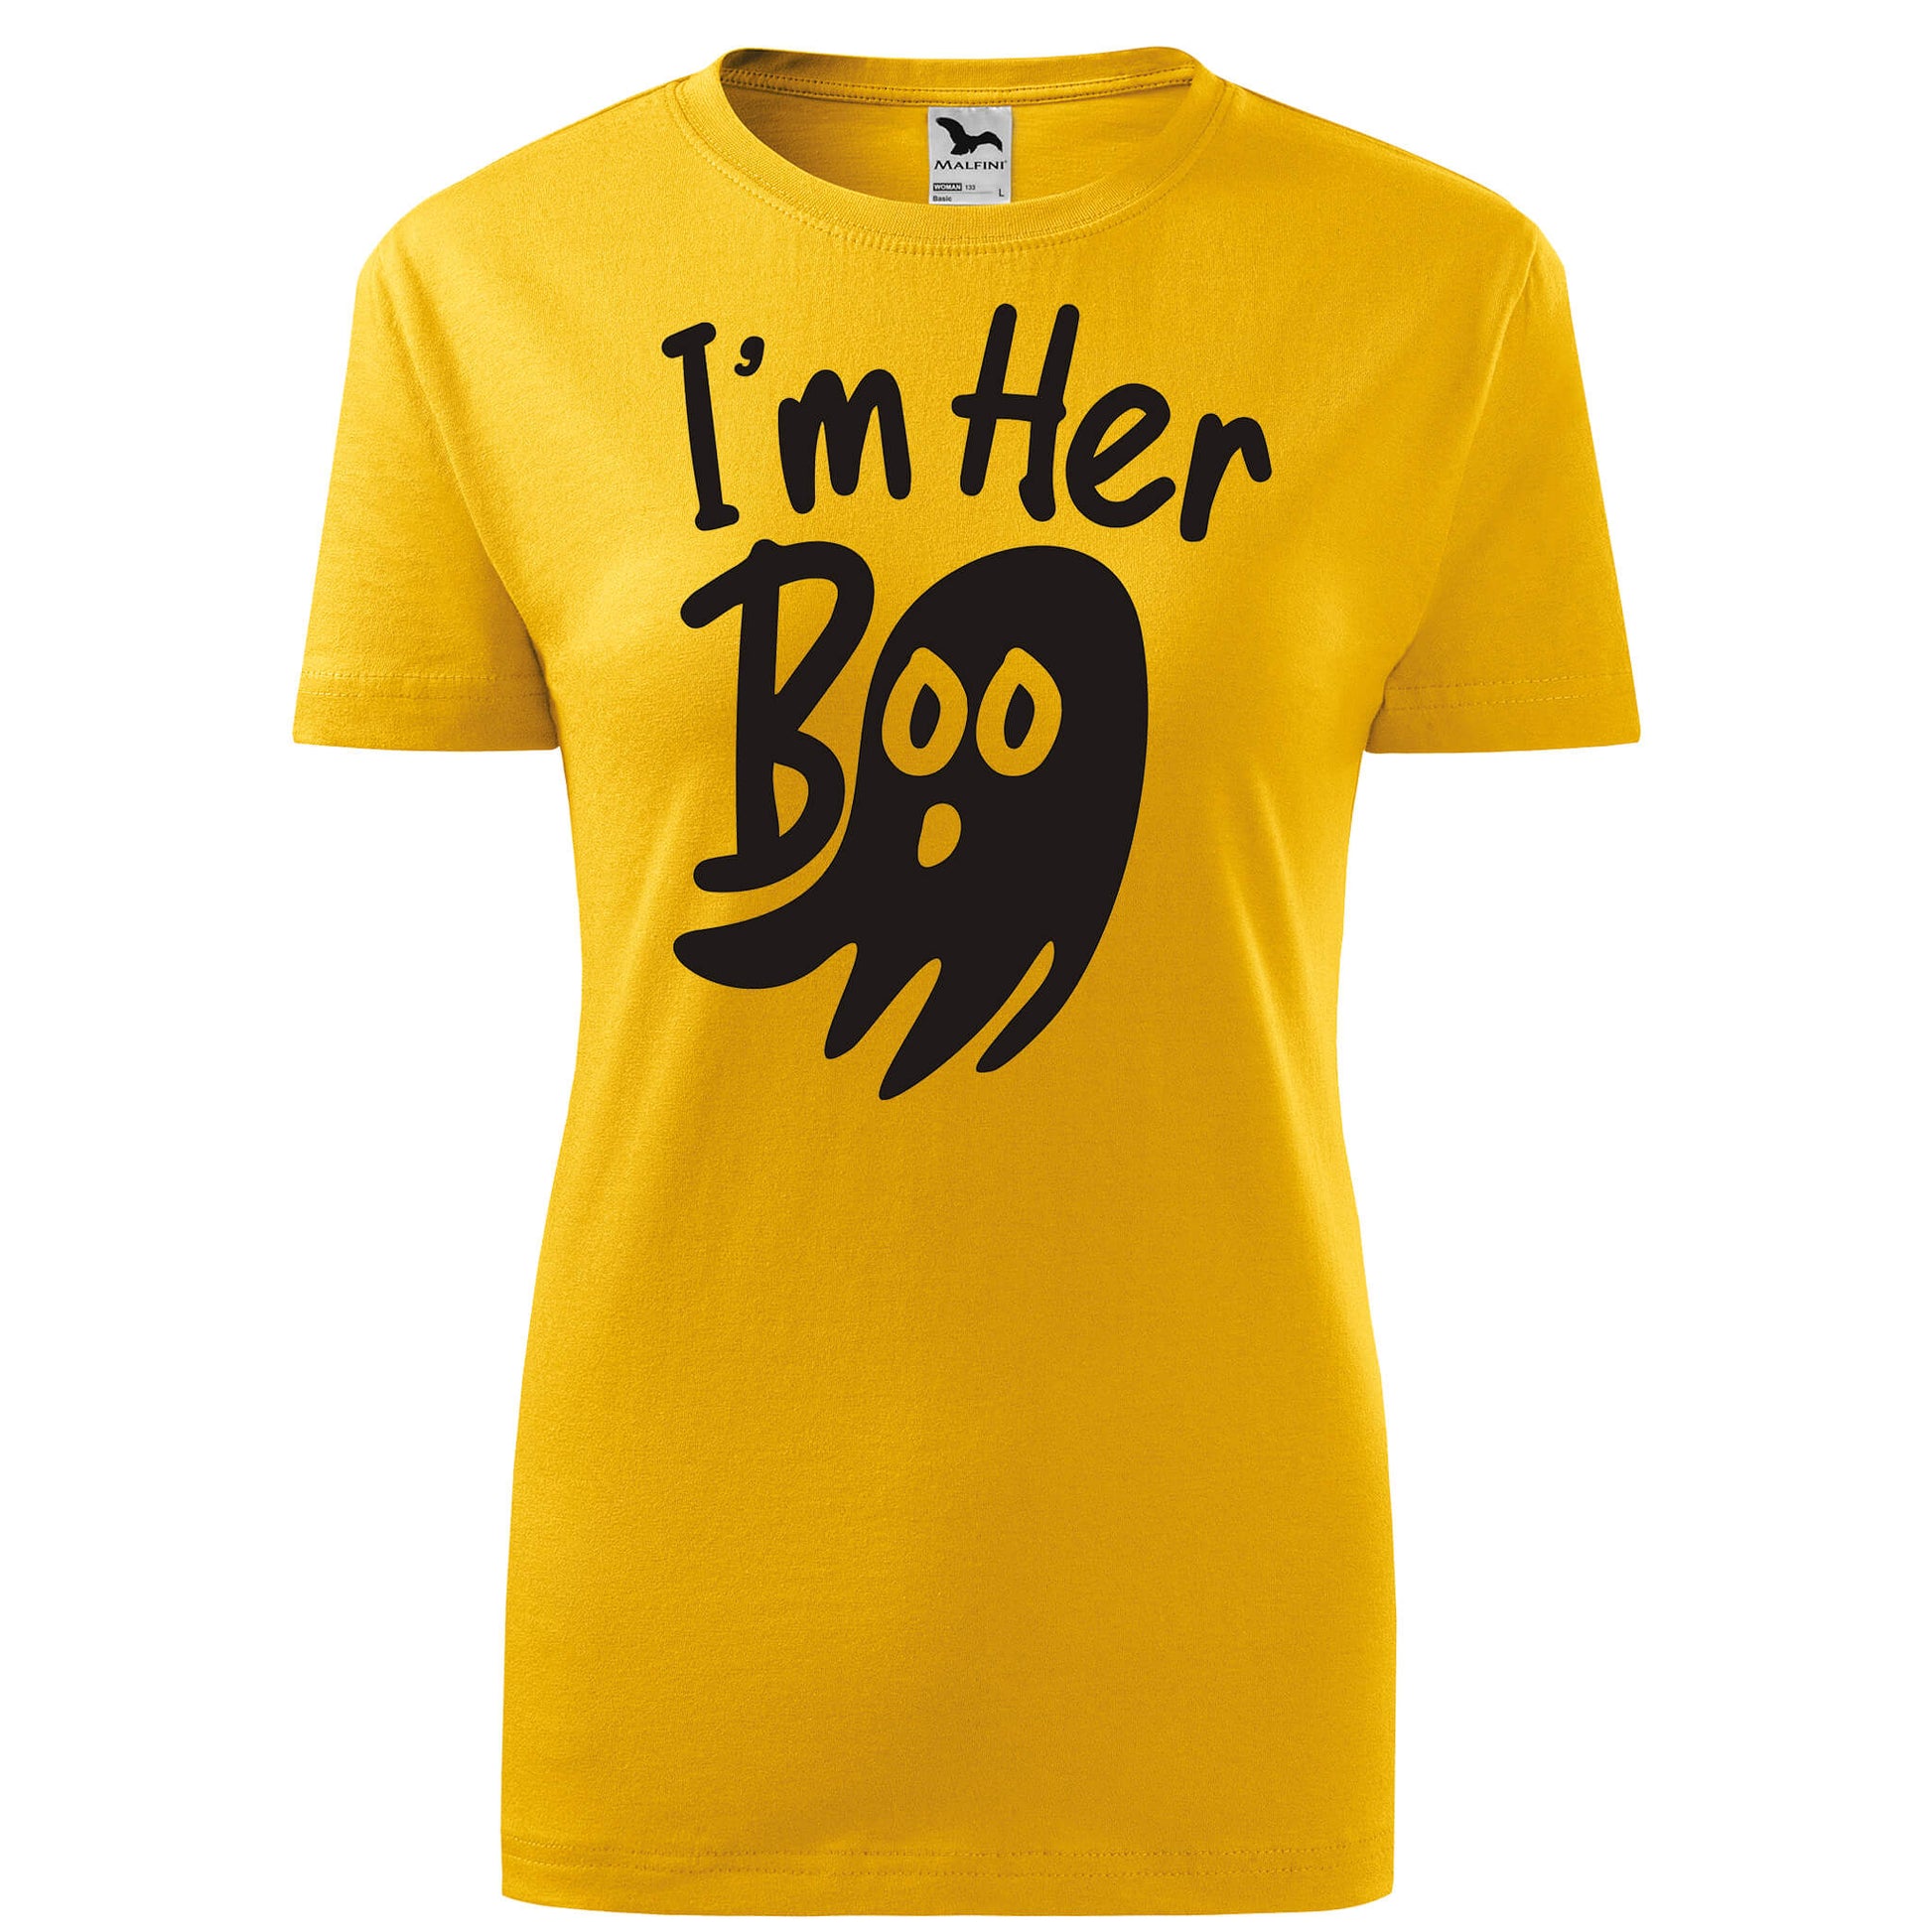 Im her boo 2 t-shirt - rvdesignprint